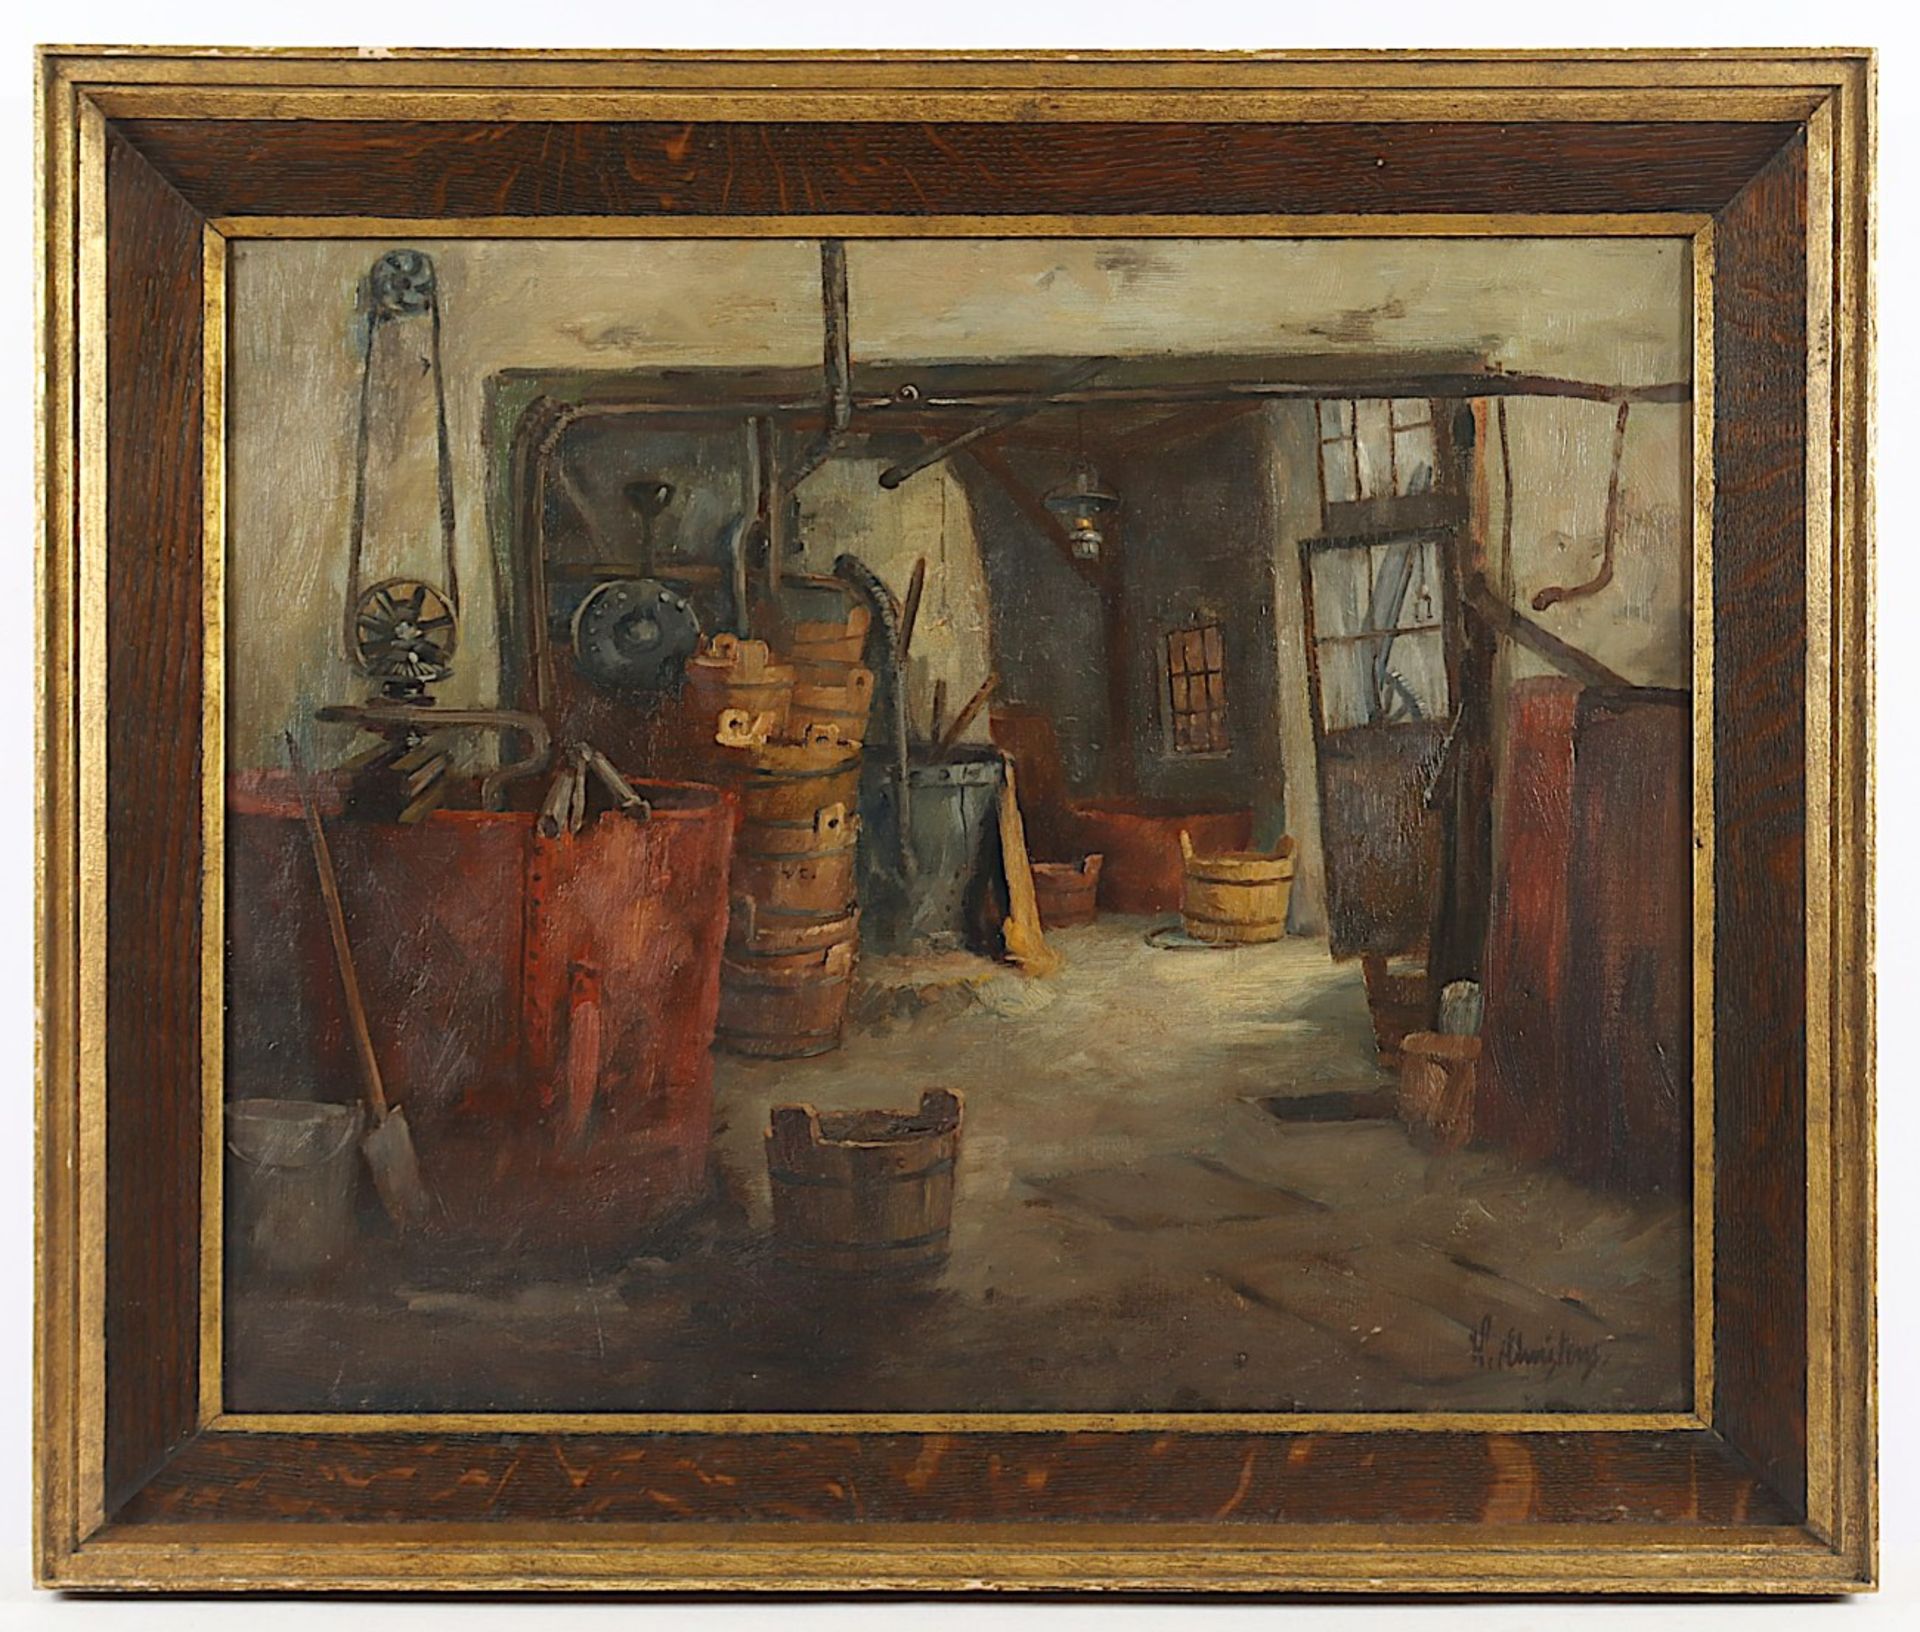 CHRISTENS, Wilhelm (1878-1964), "In der Werkstatt", Öl/Lwd., 47 x 58, unten rechts signiert, R. 